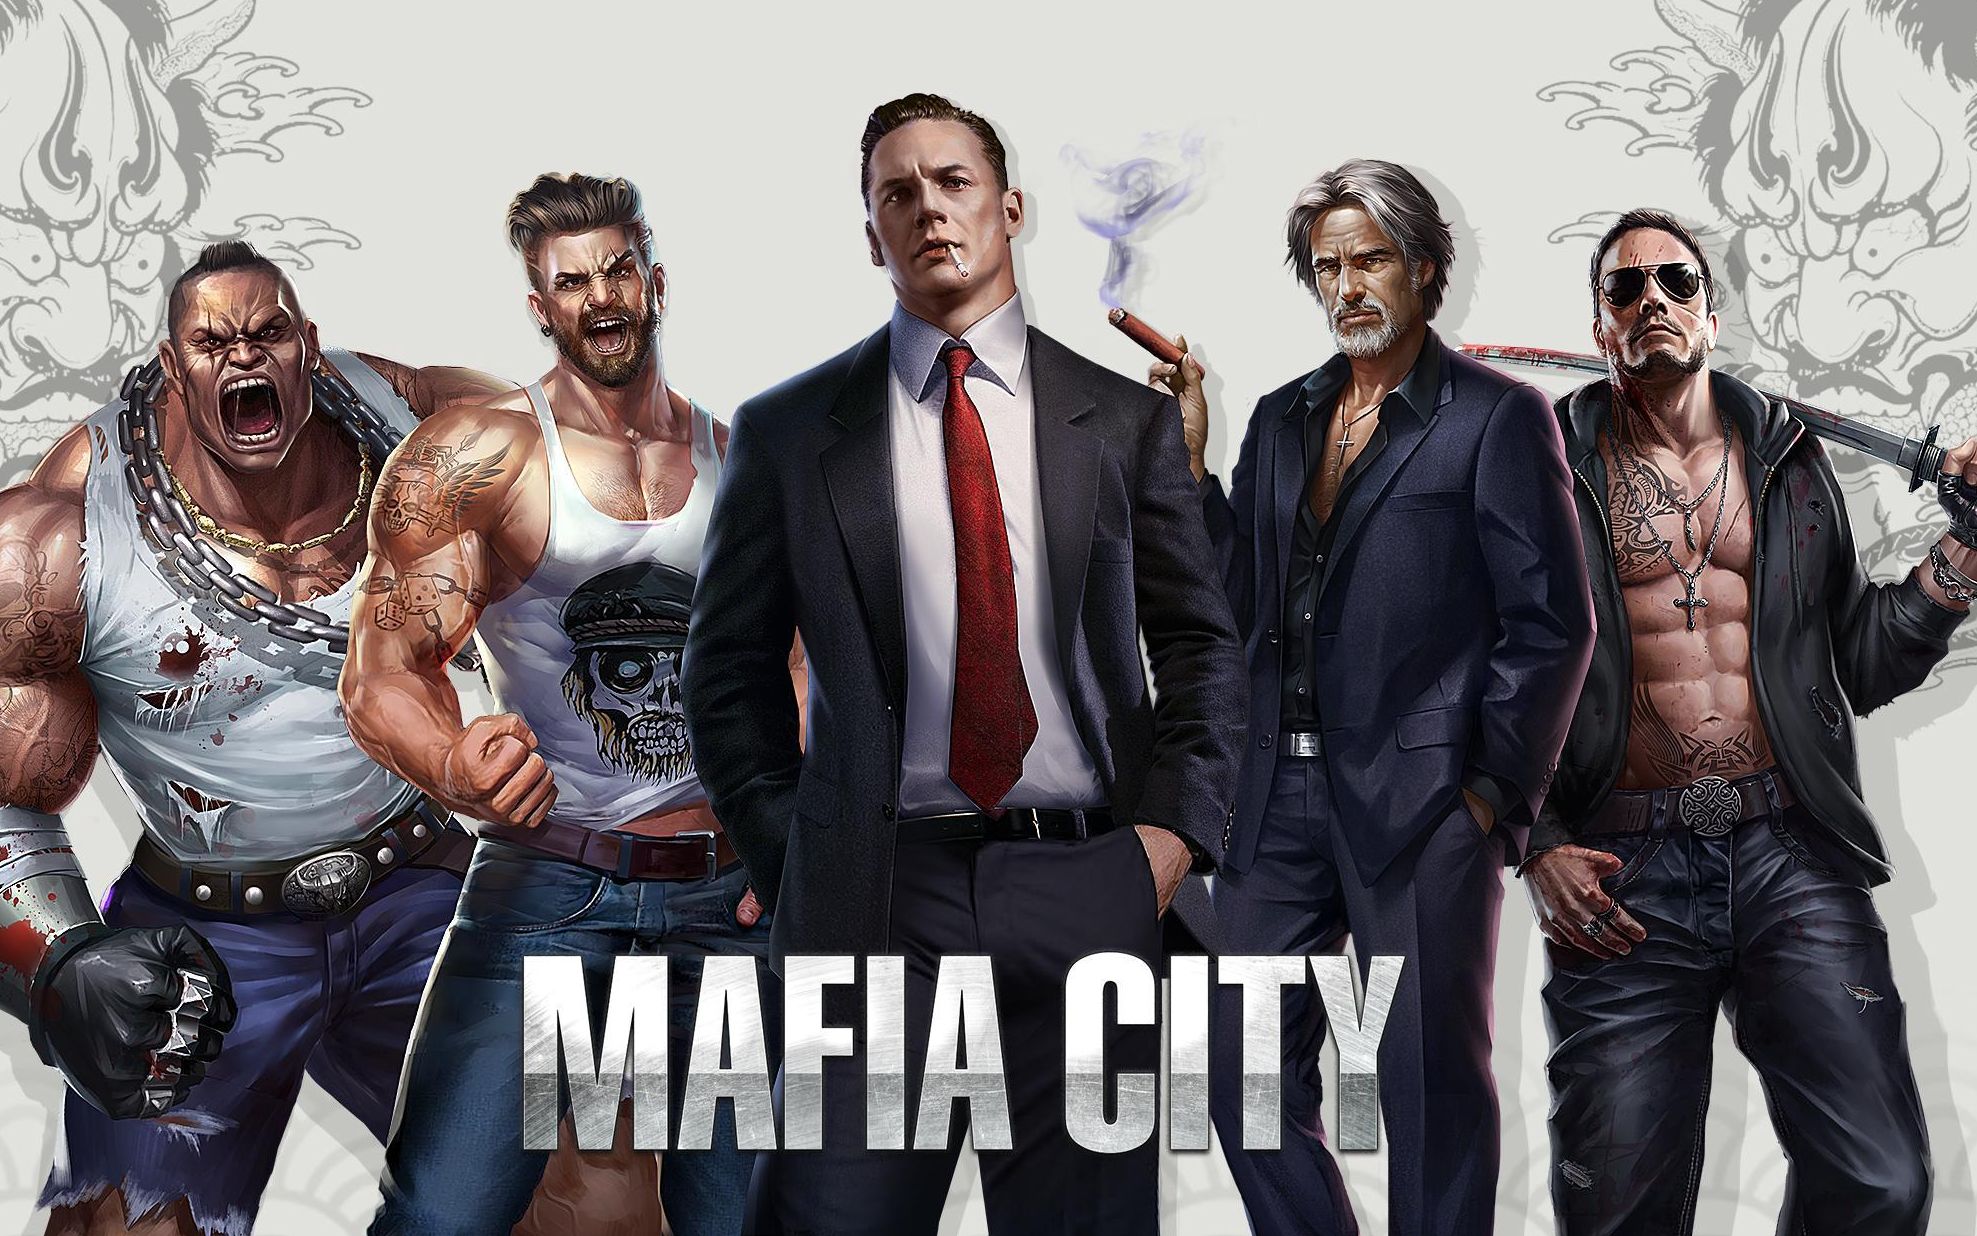 傻屌国外励志mafia游戏的广告全集所有ad原型都出自 Mafia City 这个游戏 Gta都弱爆了 都在这个视频里了 哔哩哔哩